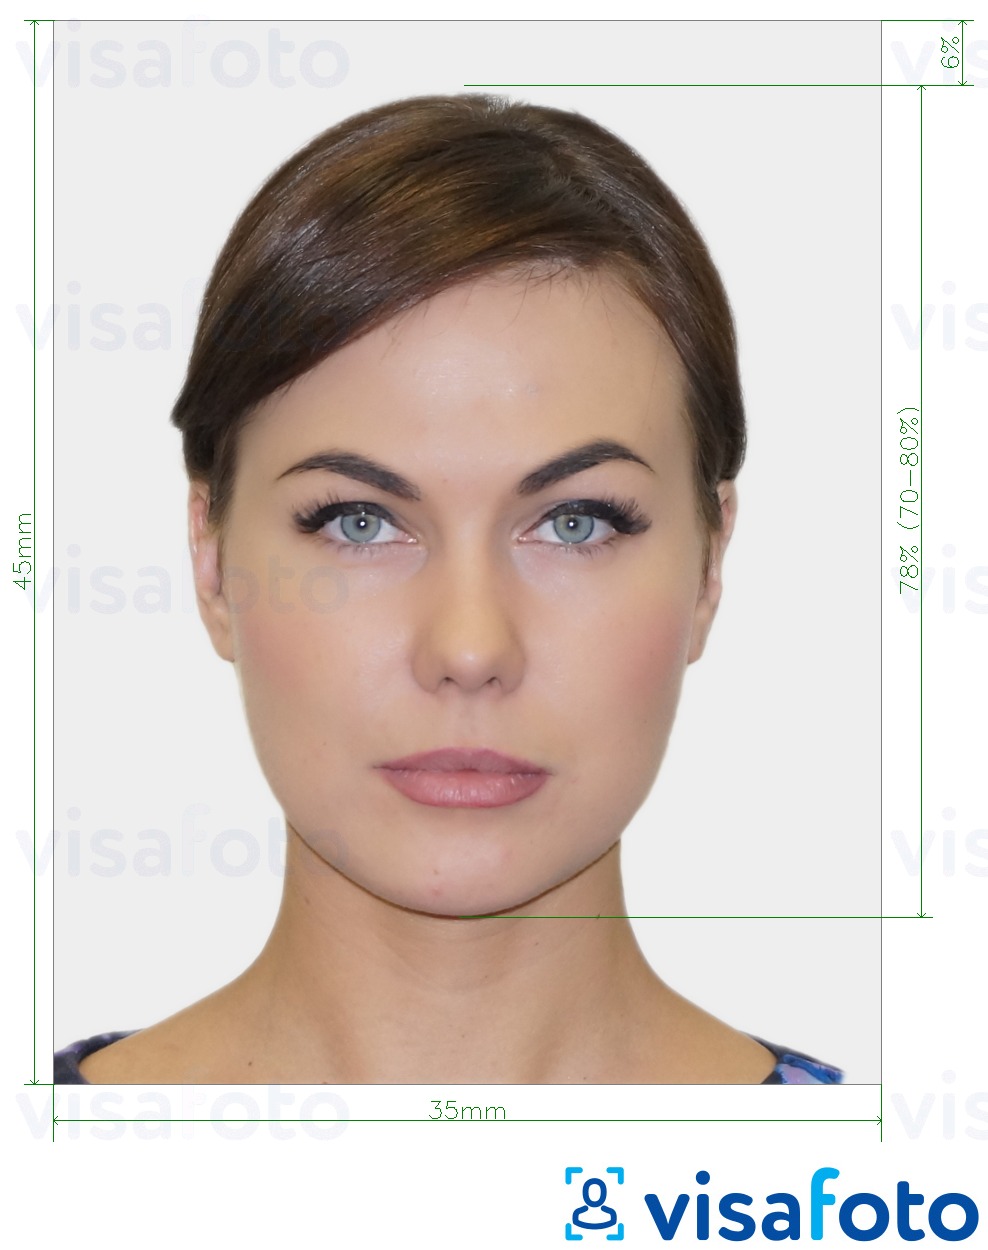 Voorbeeld van foto voor Biometrische pasfoto met exacte maatspecificatie